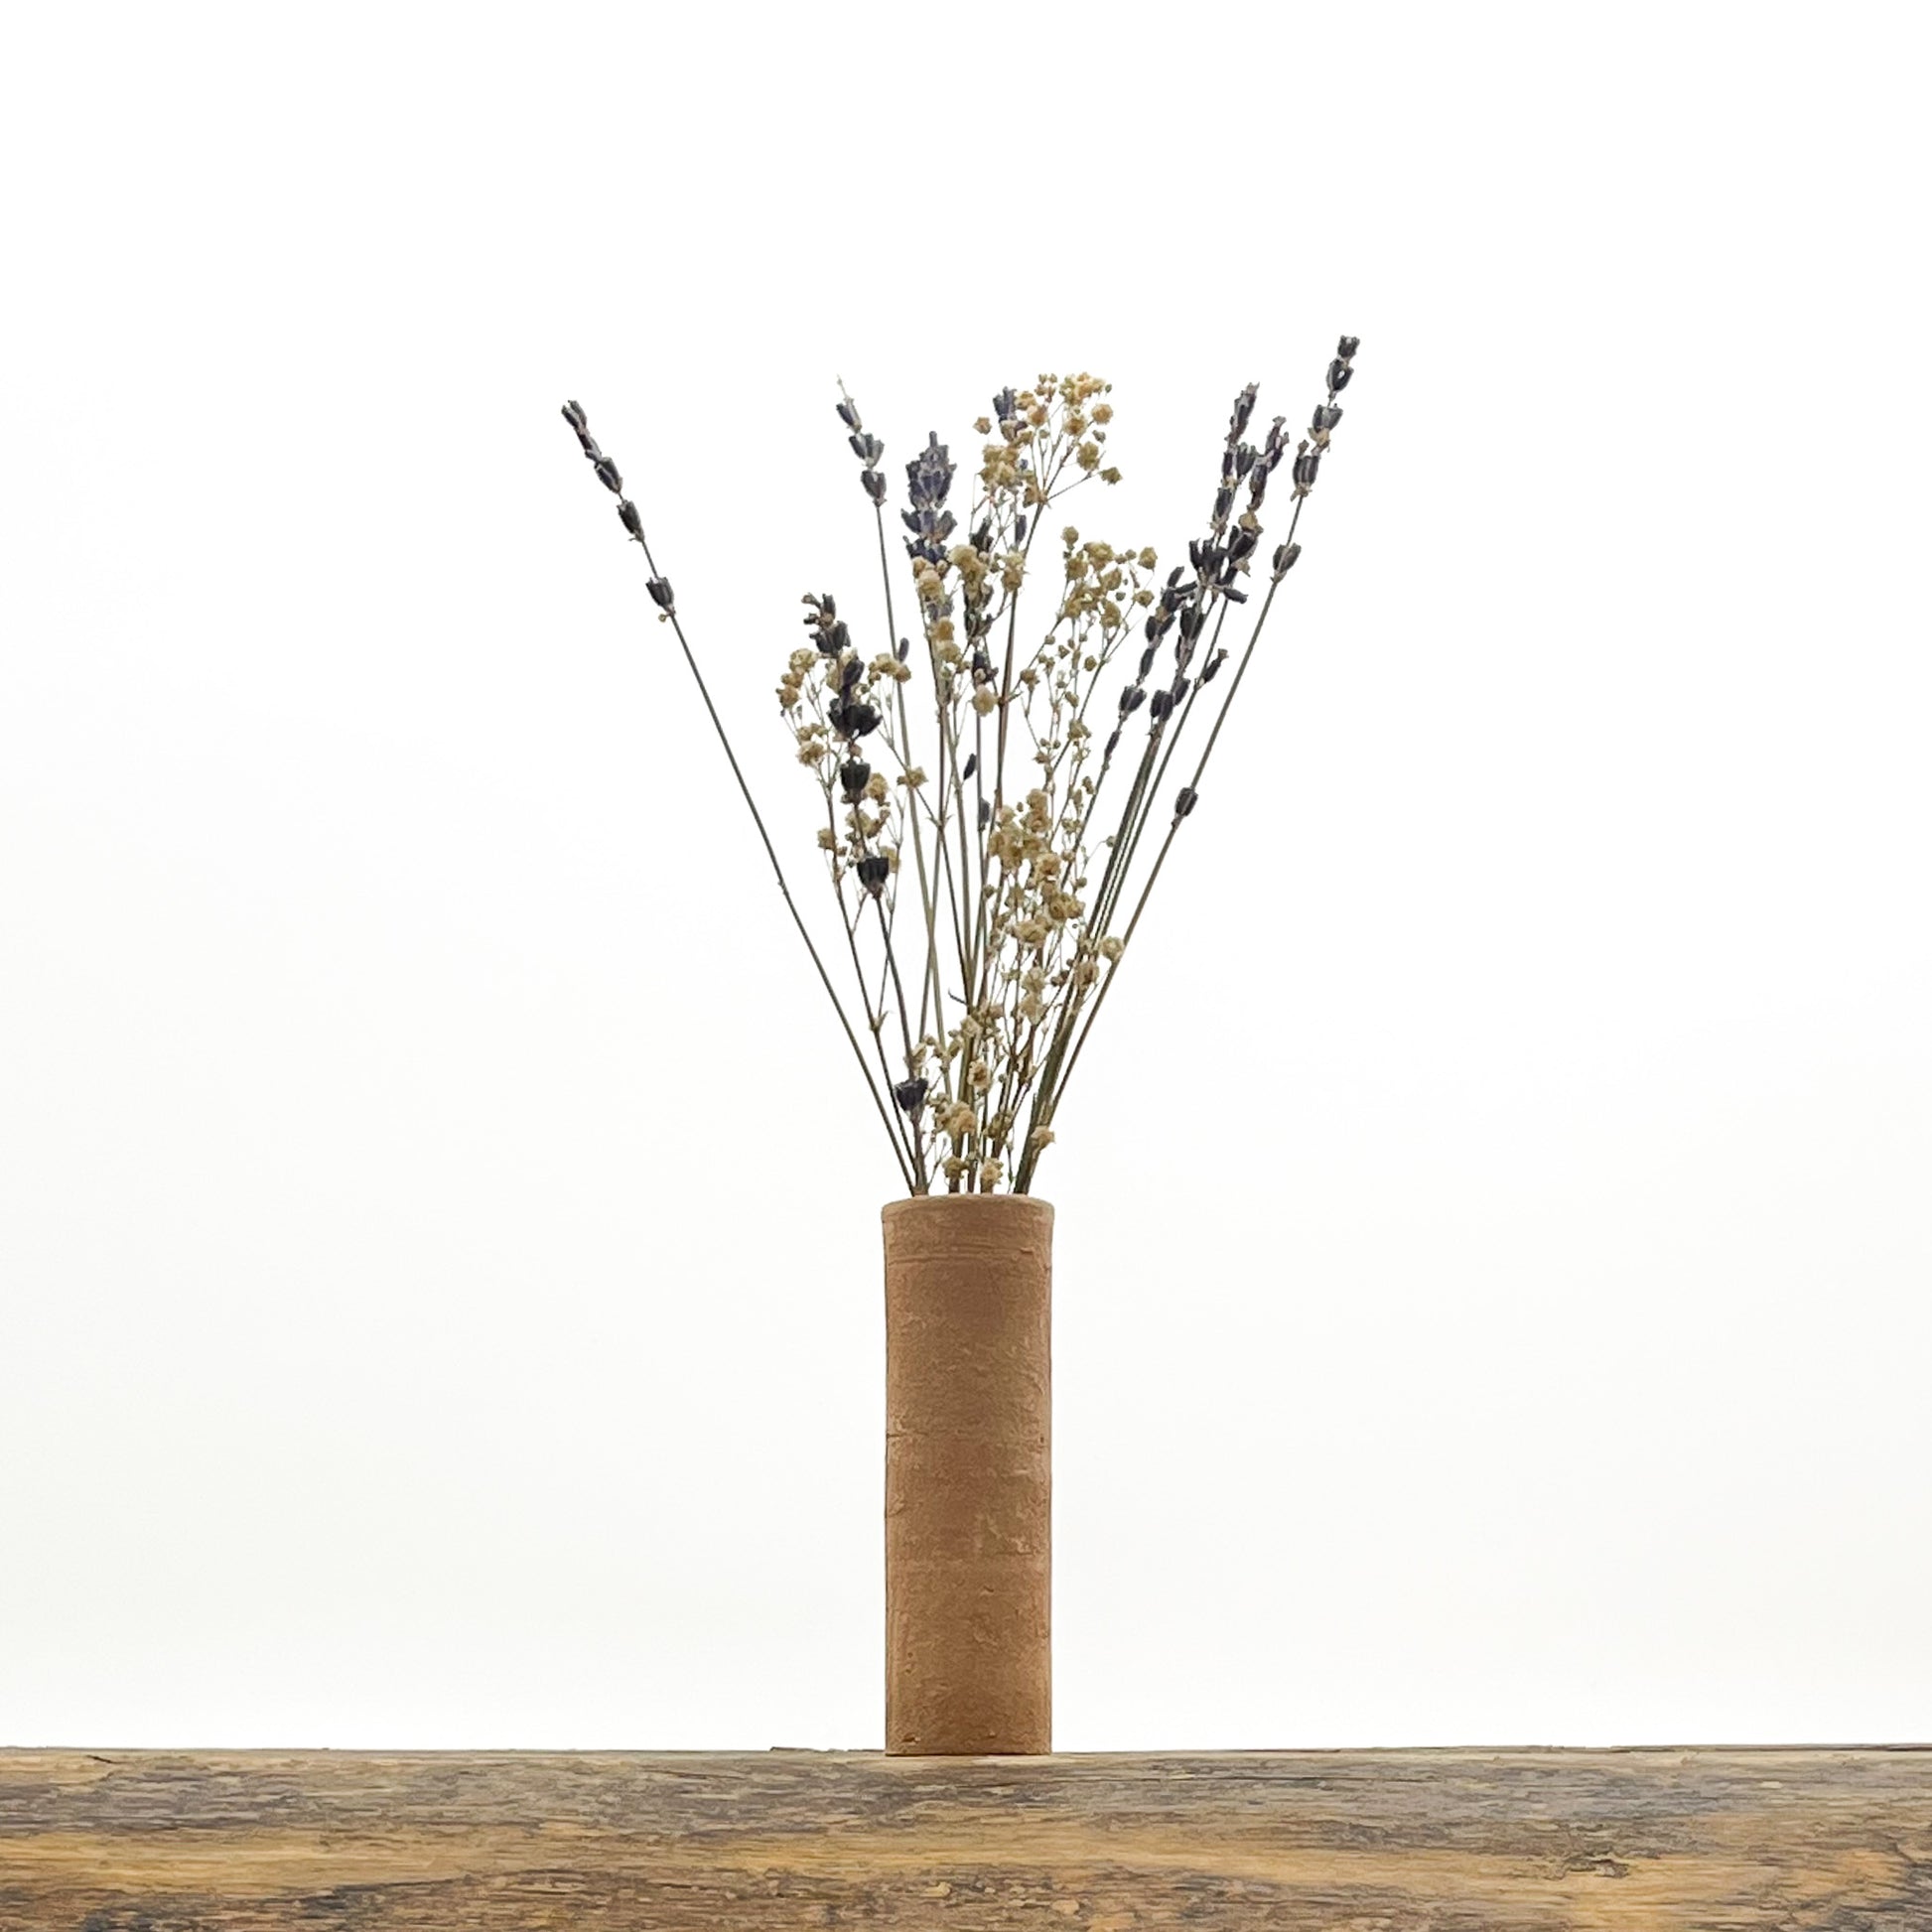 Ensemble de 3 petits vases tubes au design épuré en terre cuite fait main. Livrés avec fleurs séchées offertes.